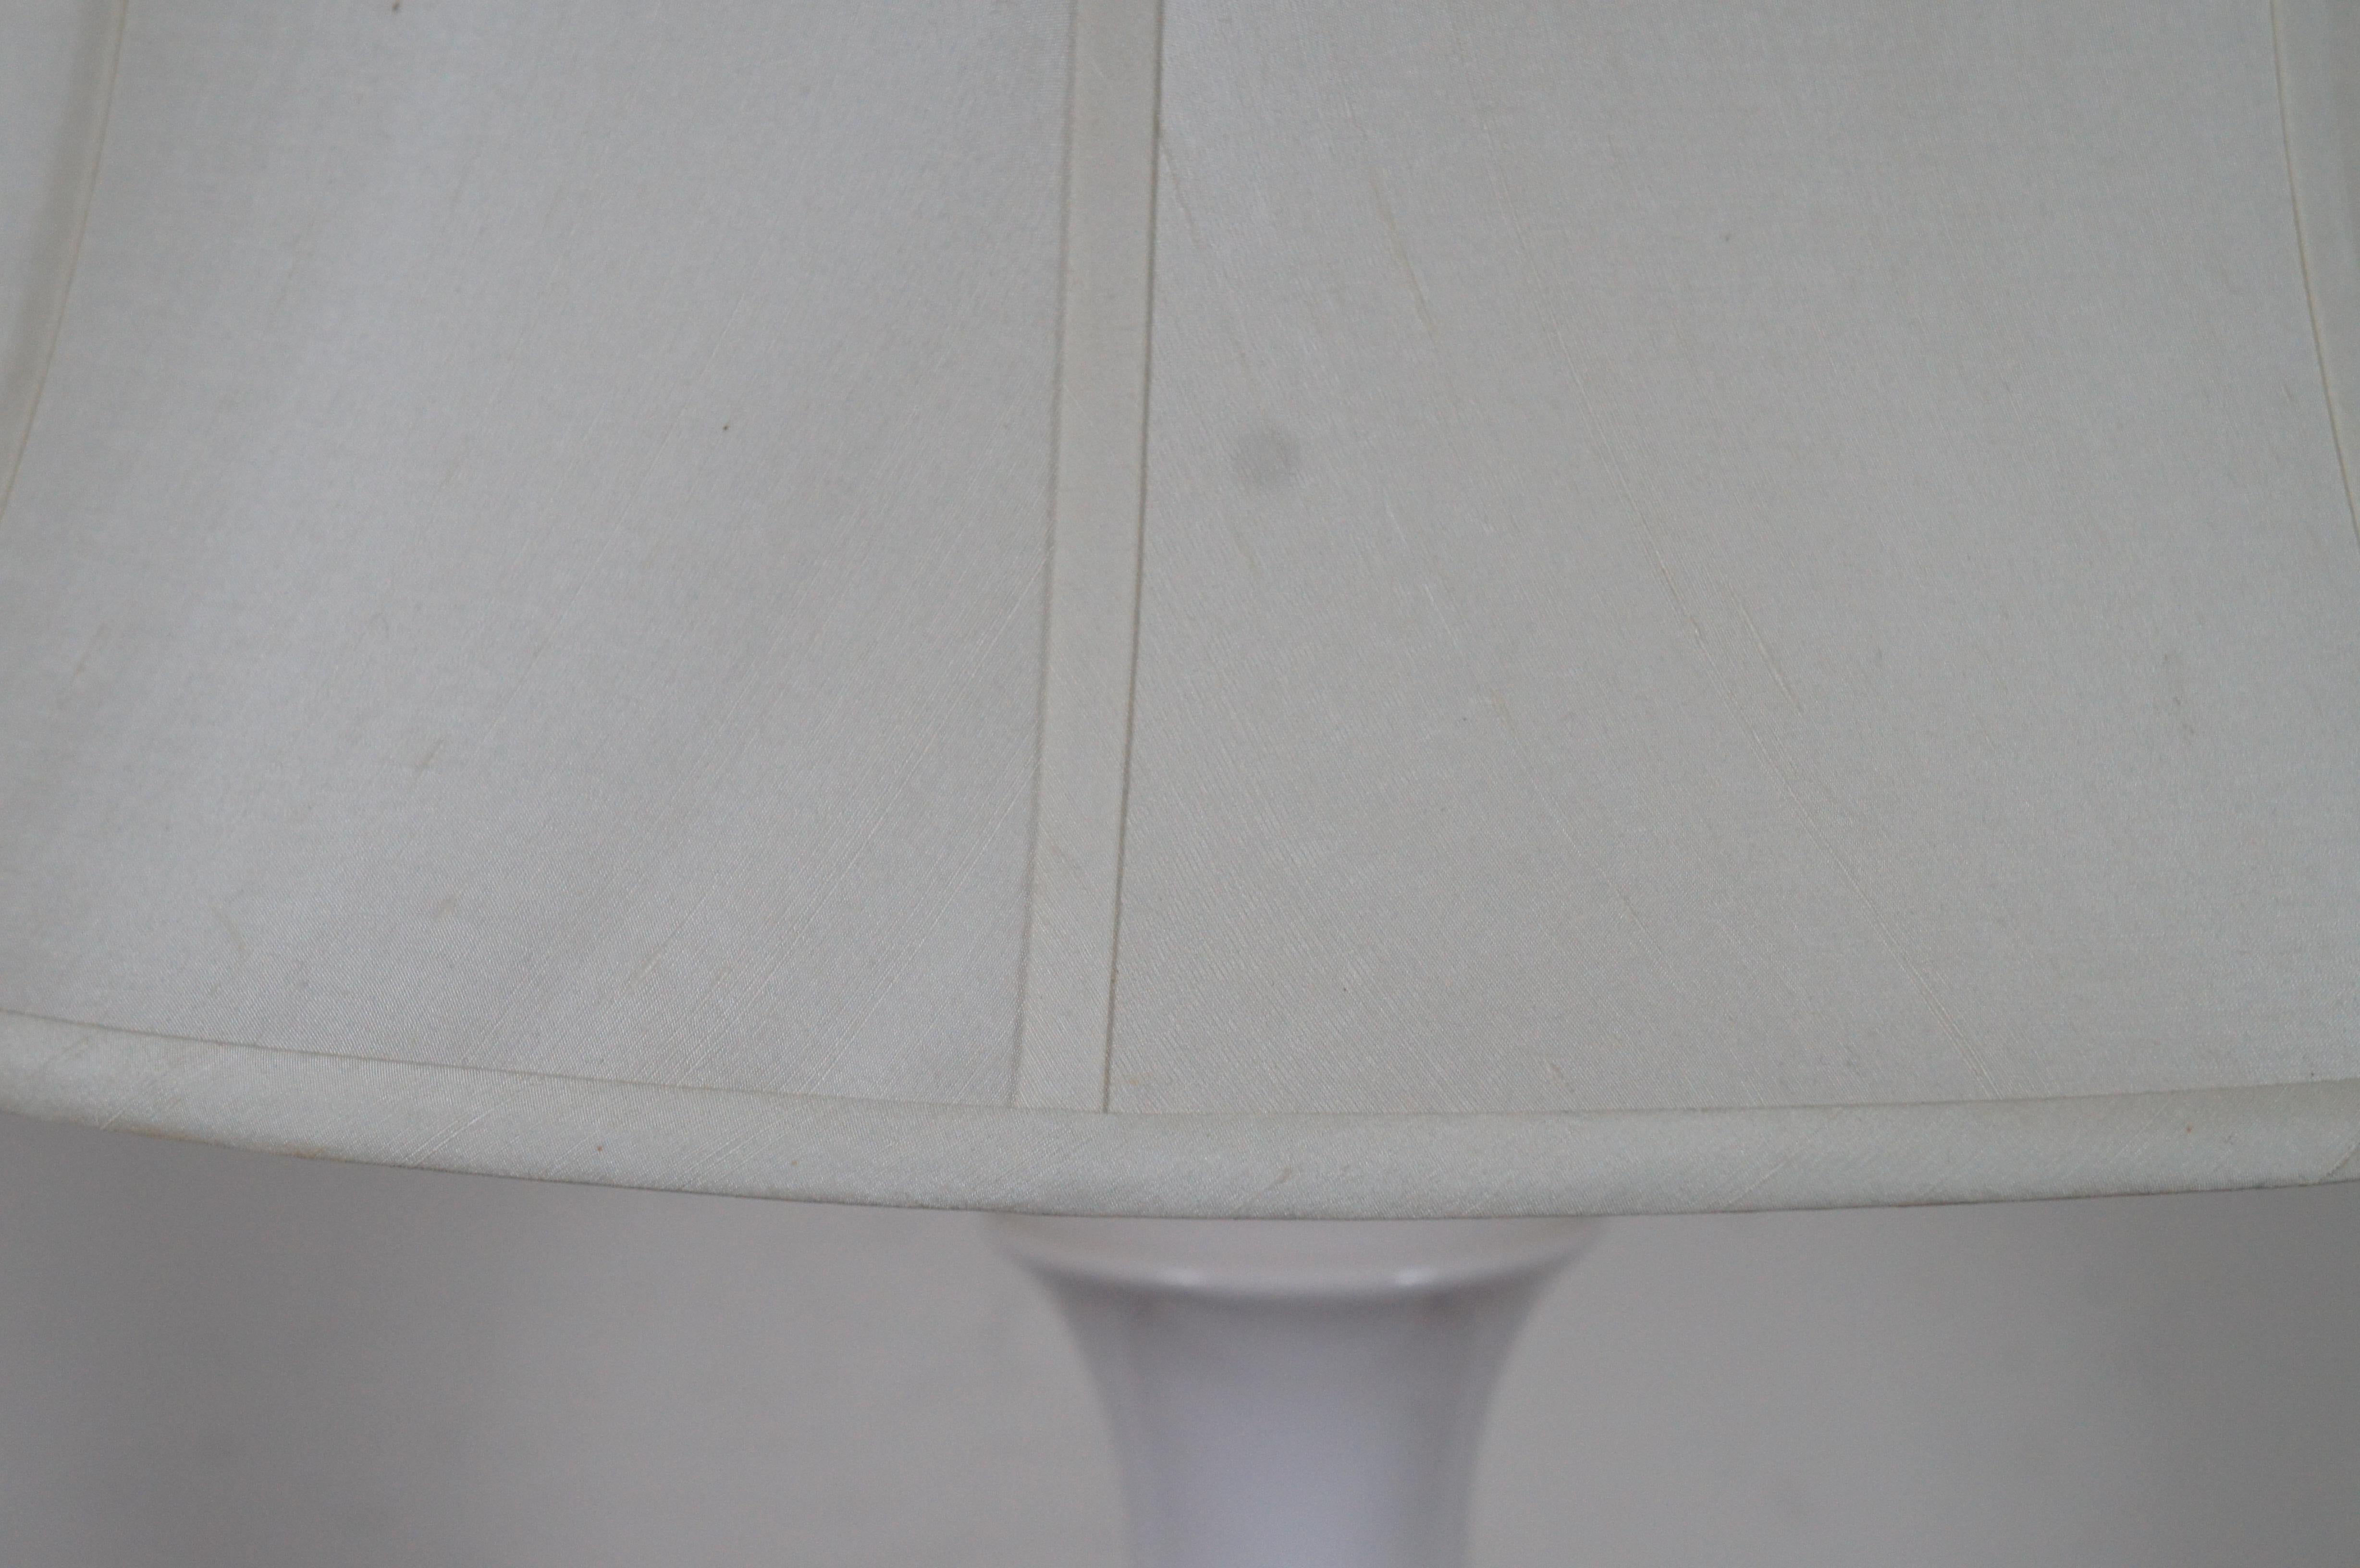 Vintage White Ceramic Urn Vase Shaped Table Lamp & Shade w Wood Base 3